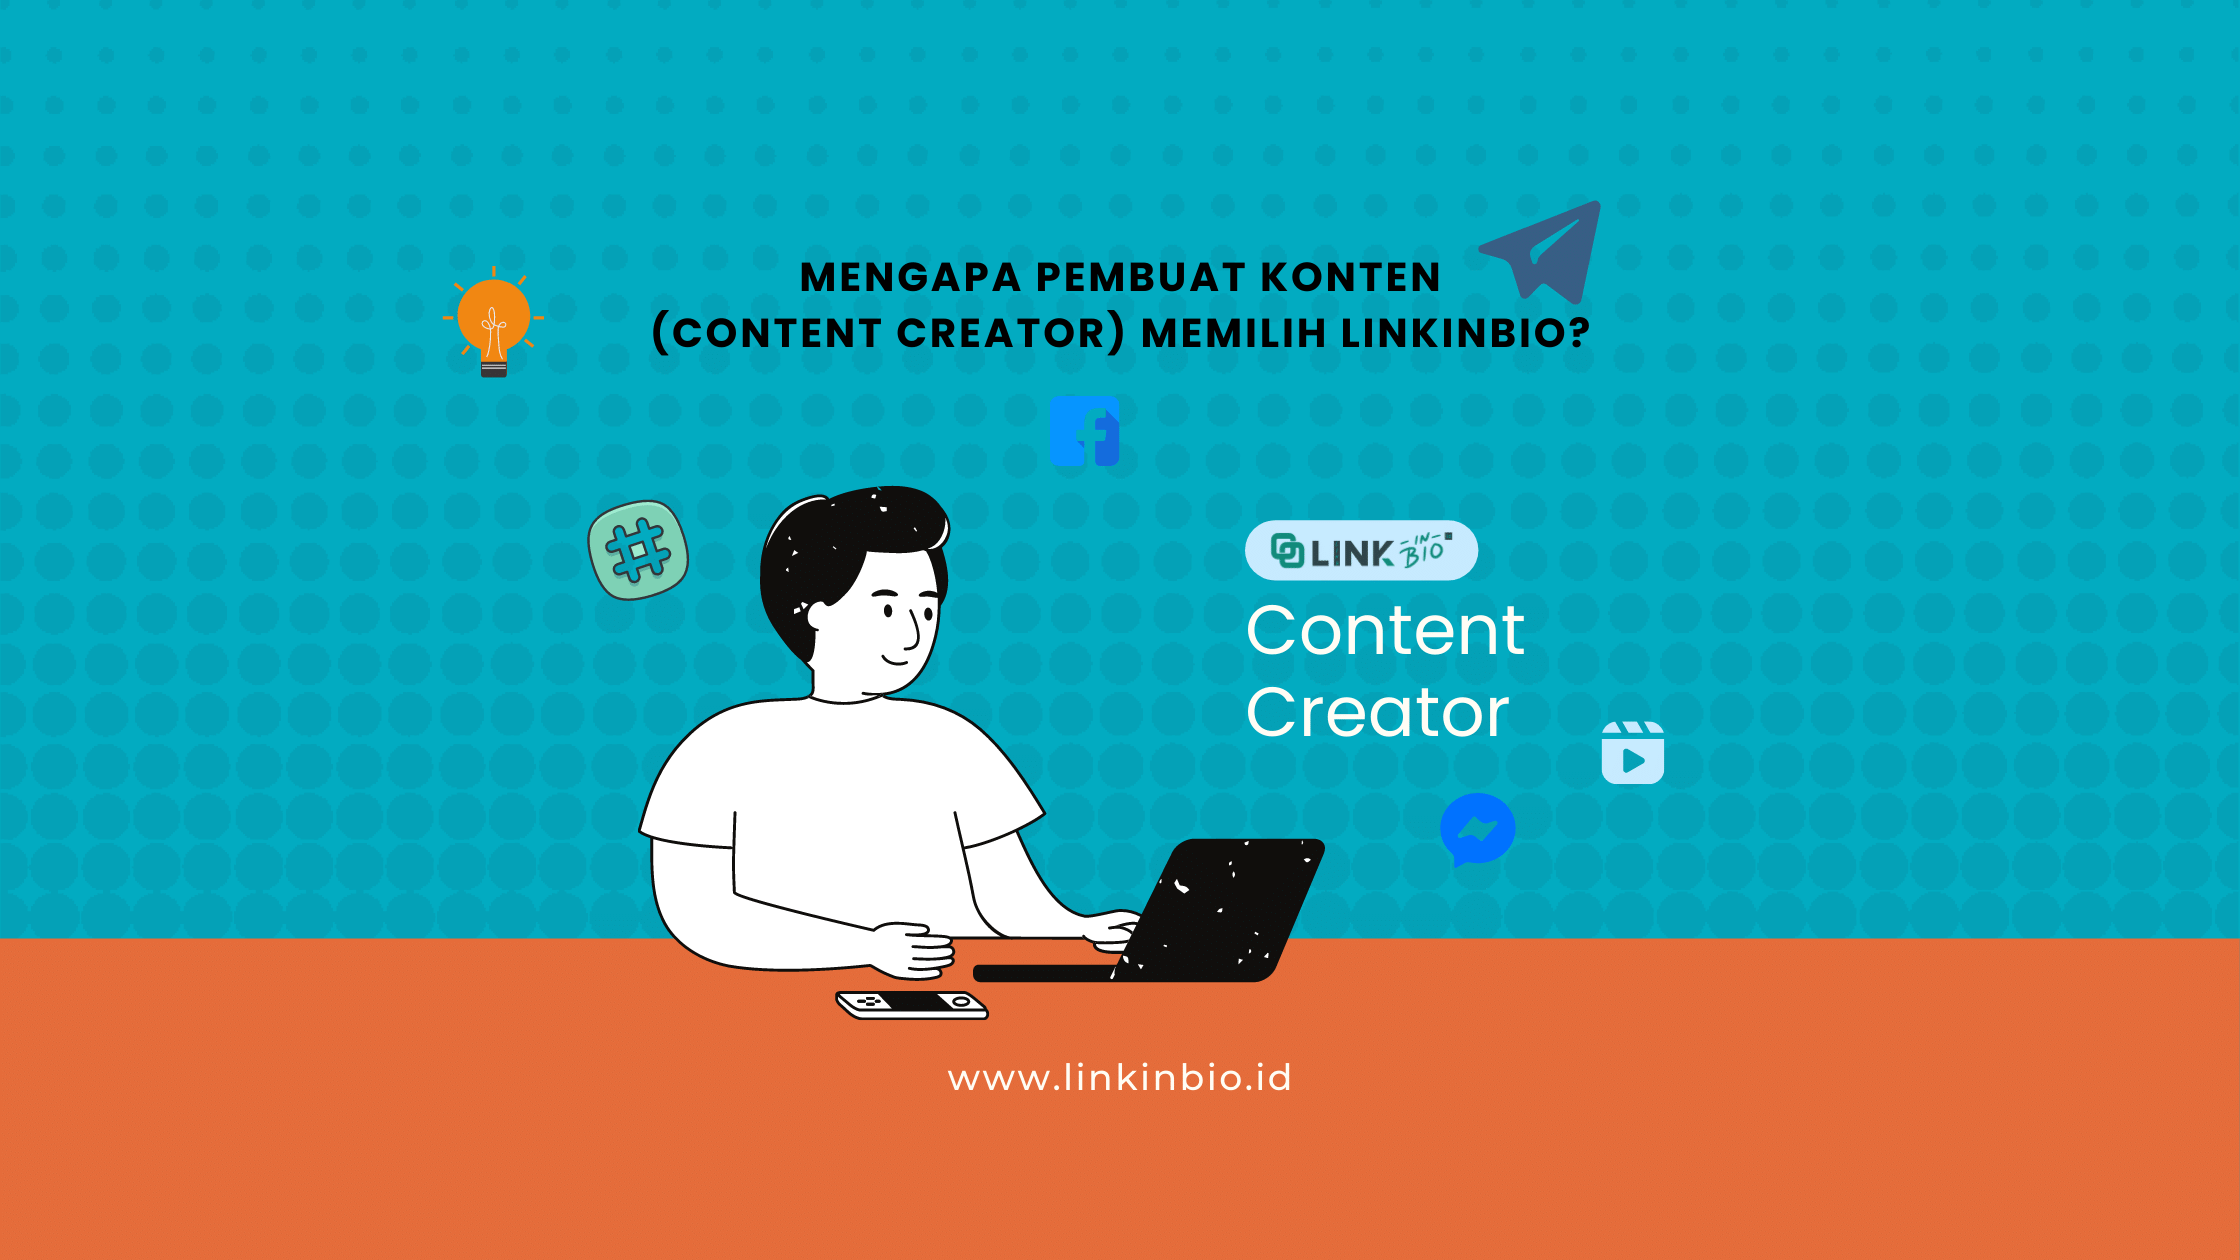 Mengapa pembuat konten (Content Creator) memilih linkinbio?